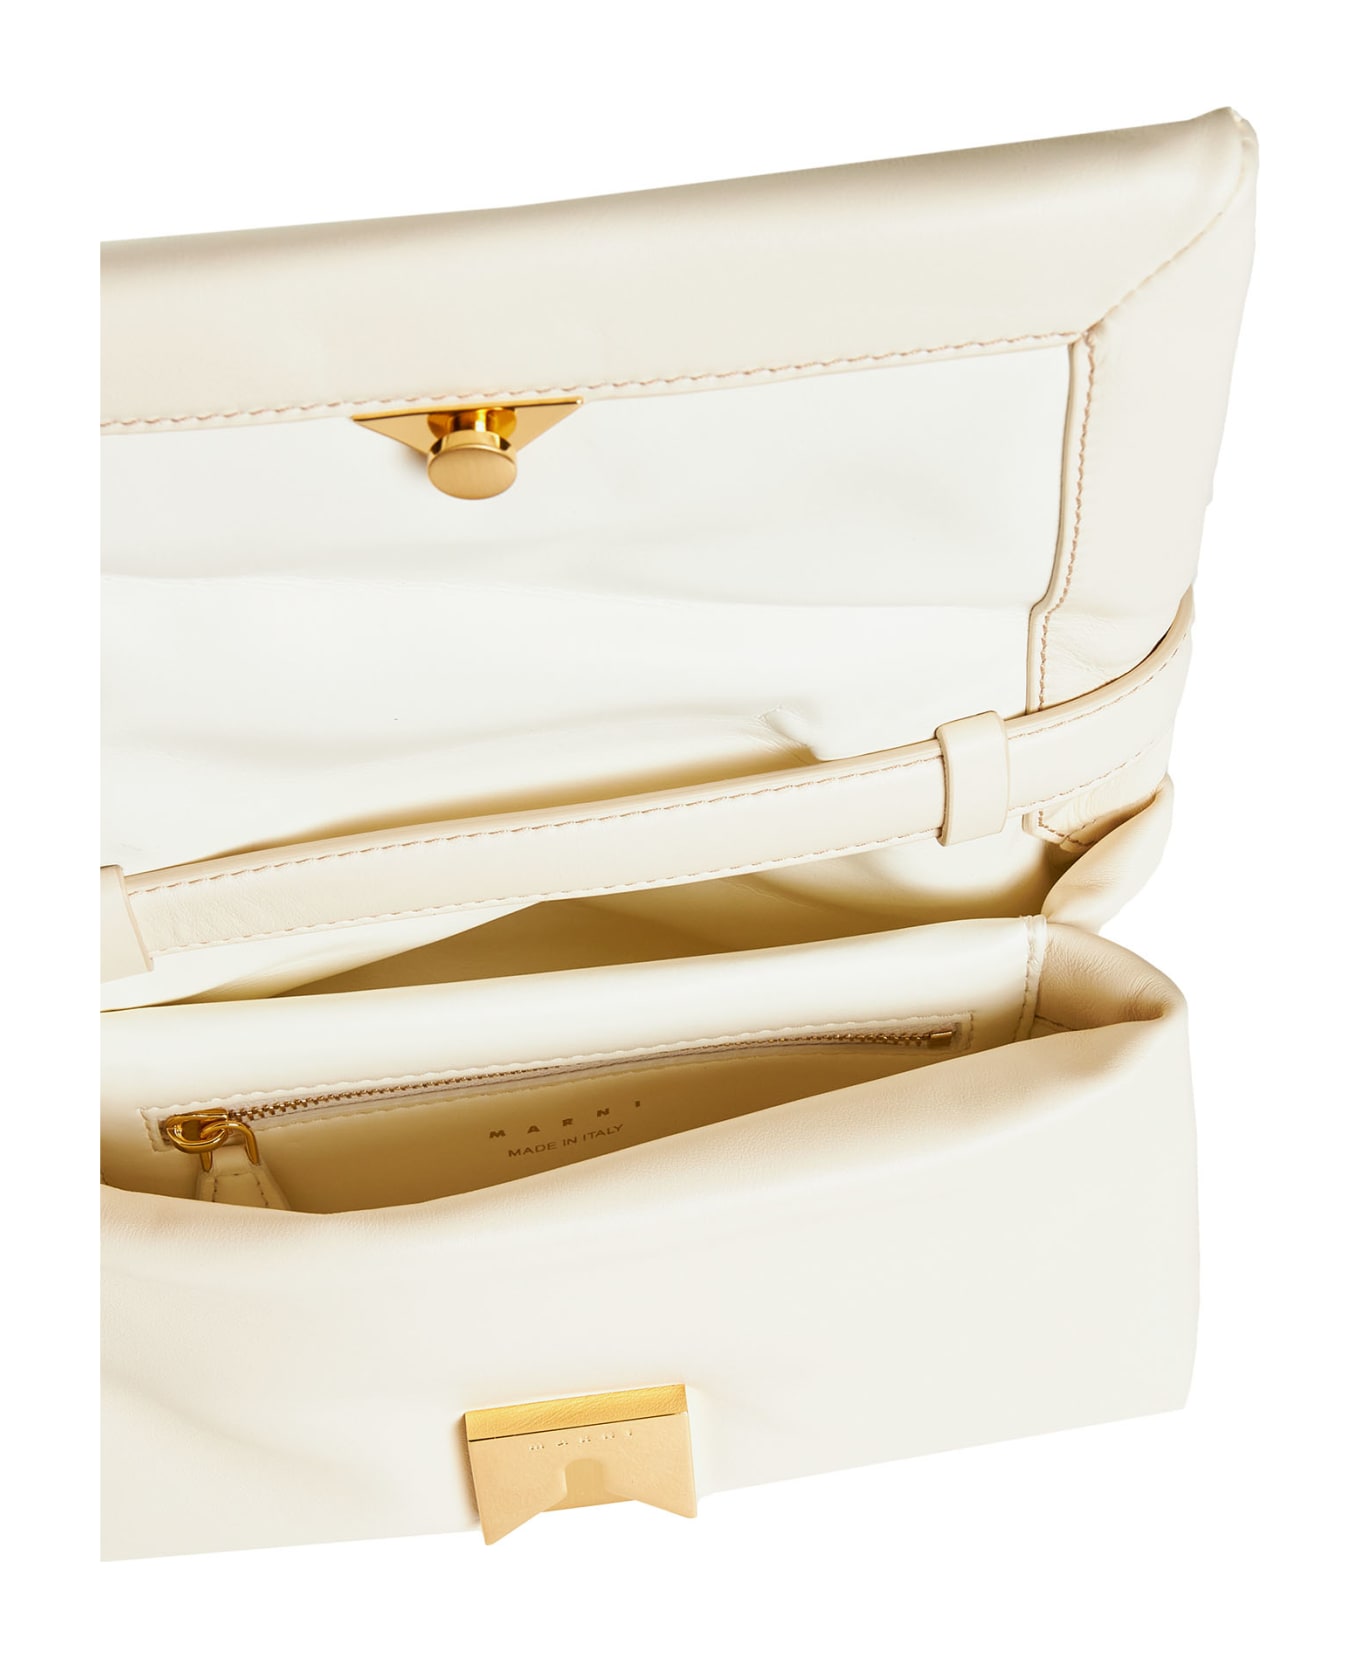 Marni Shoulder Bag - Ivory